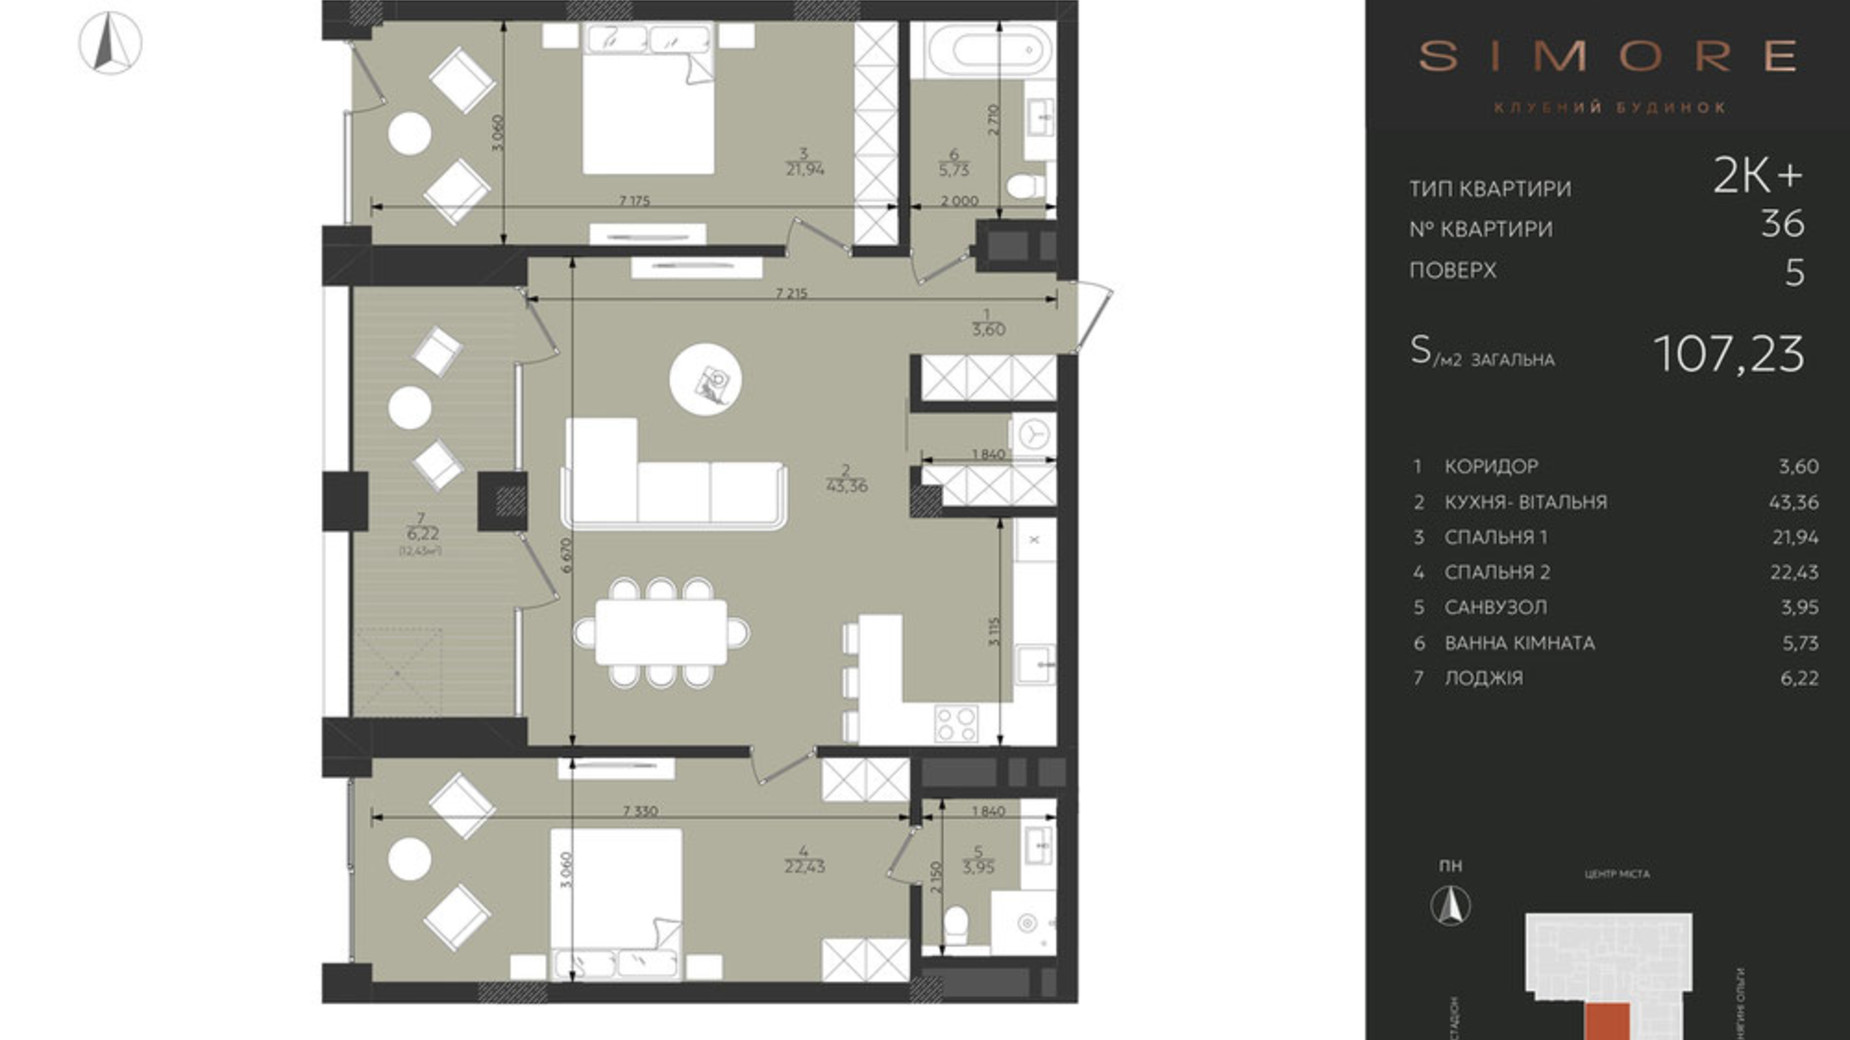 Планировка 2-комнатной квартиры в Клубный дом Simore 107.23 м², фото 694210